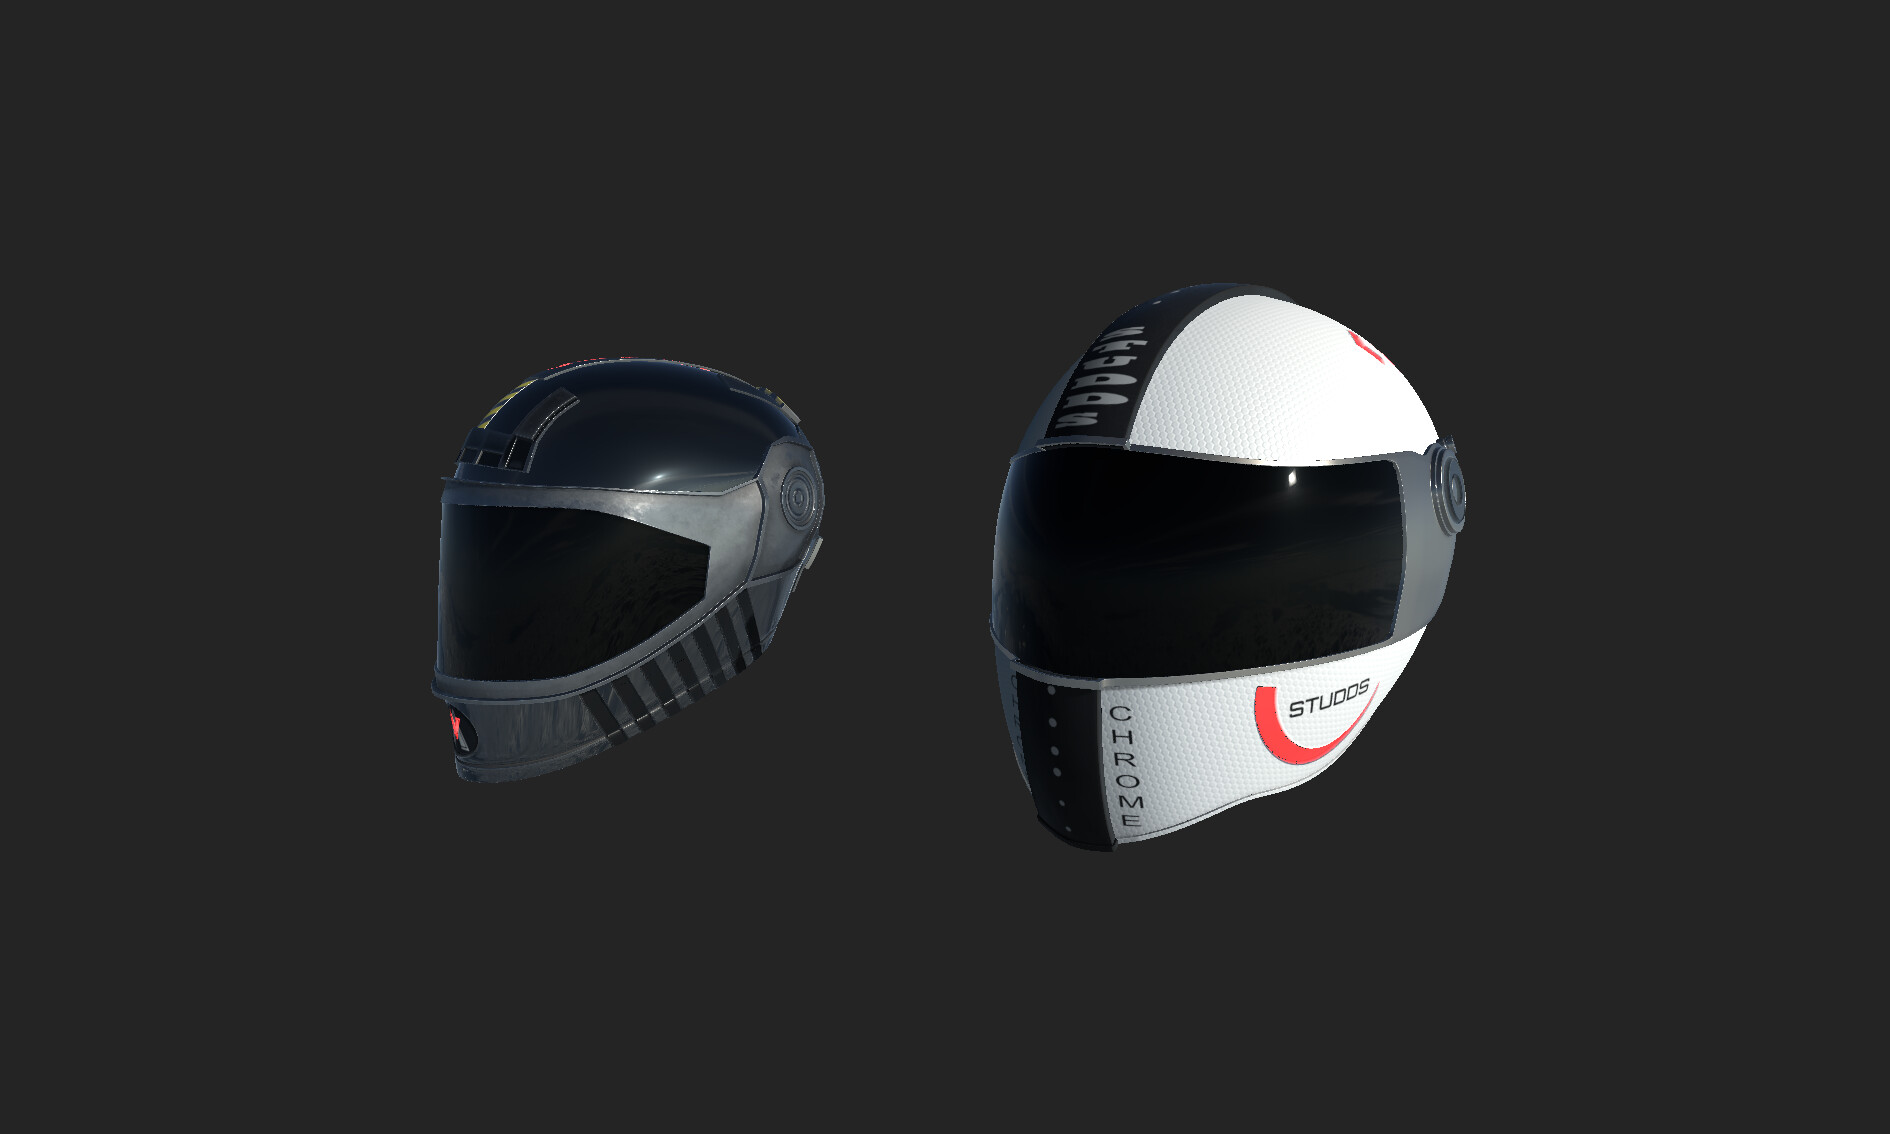 ArtStation - 3D Helmets